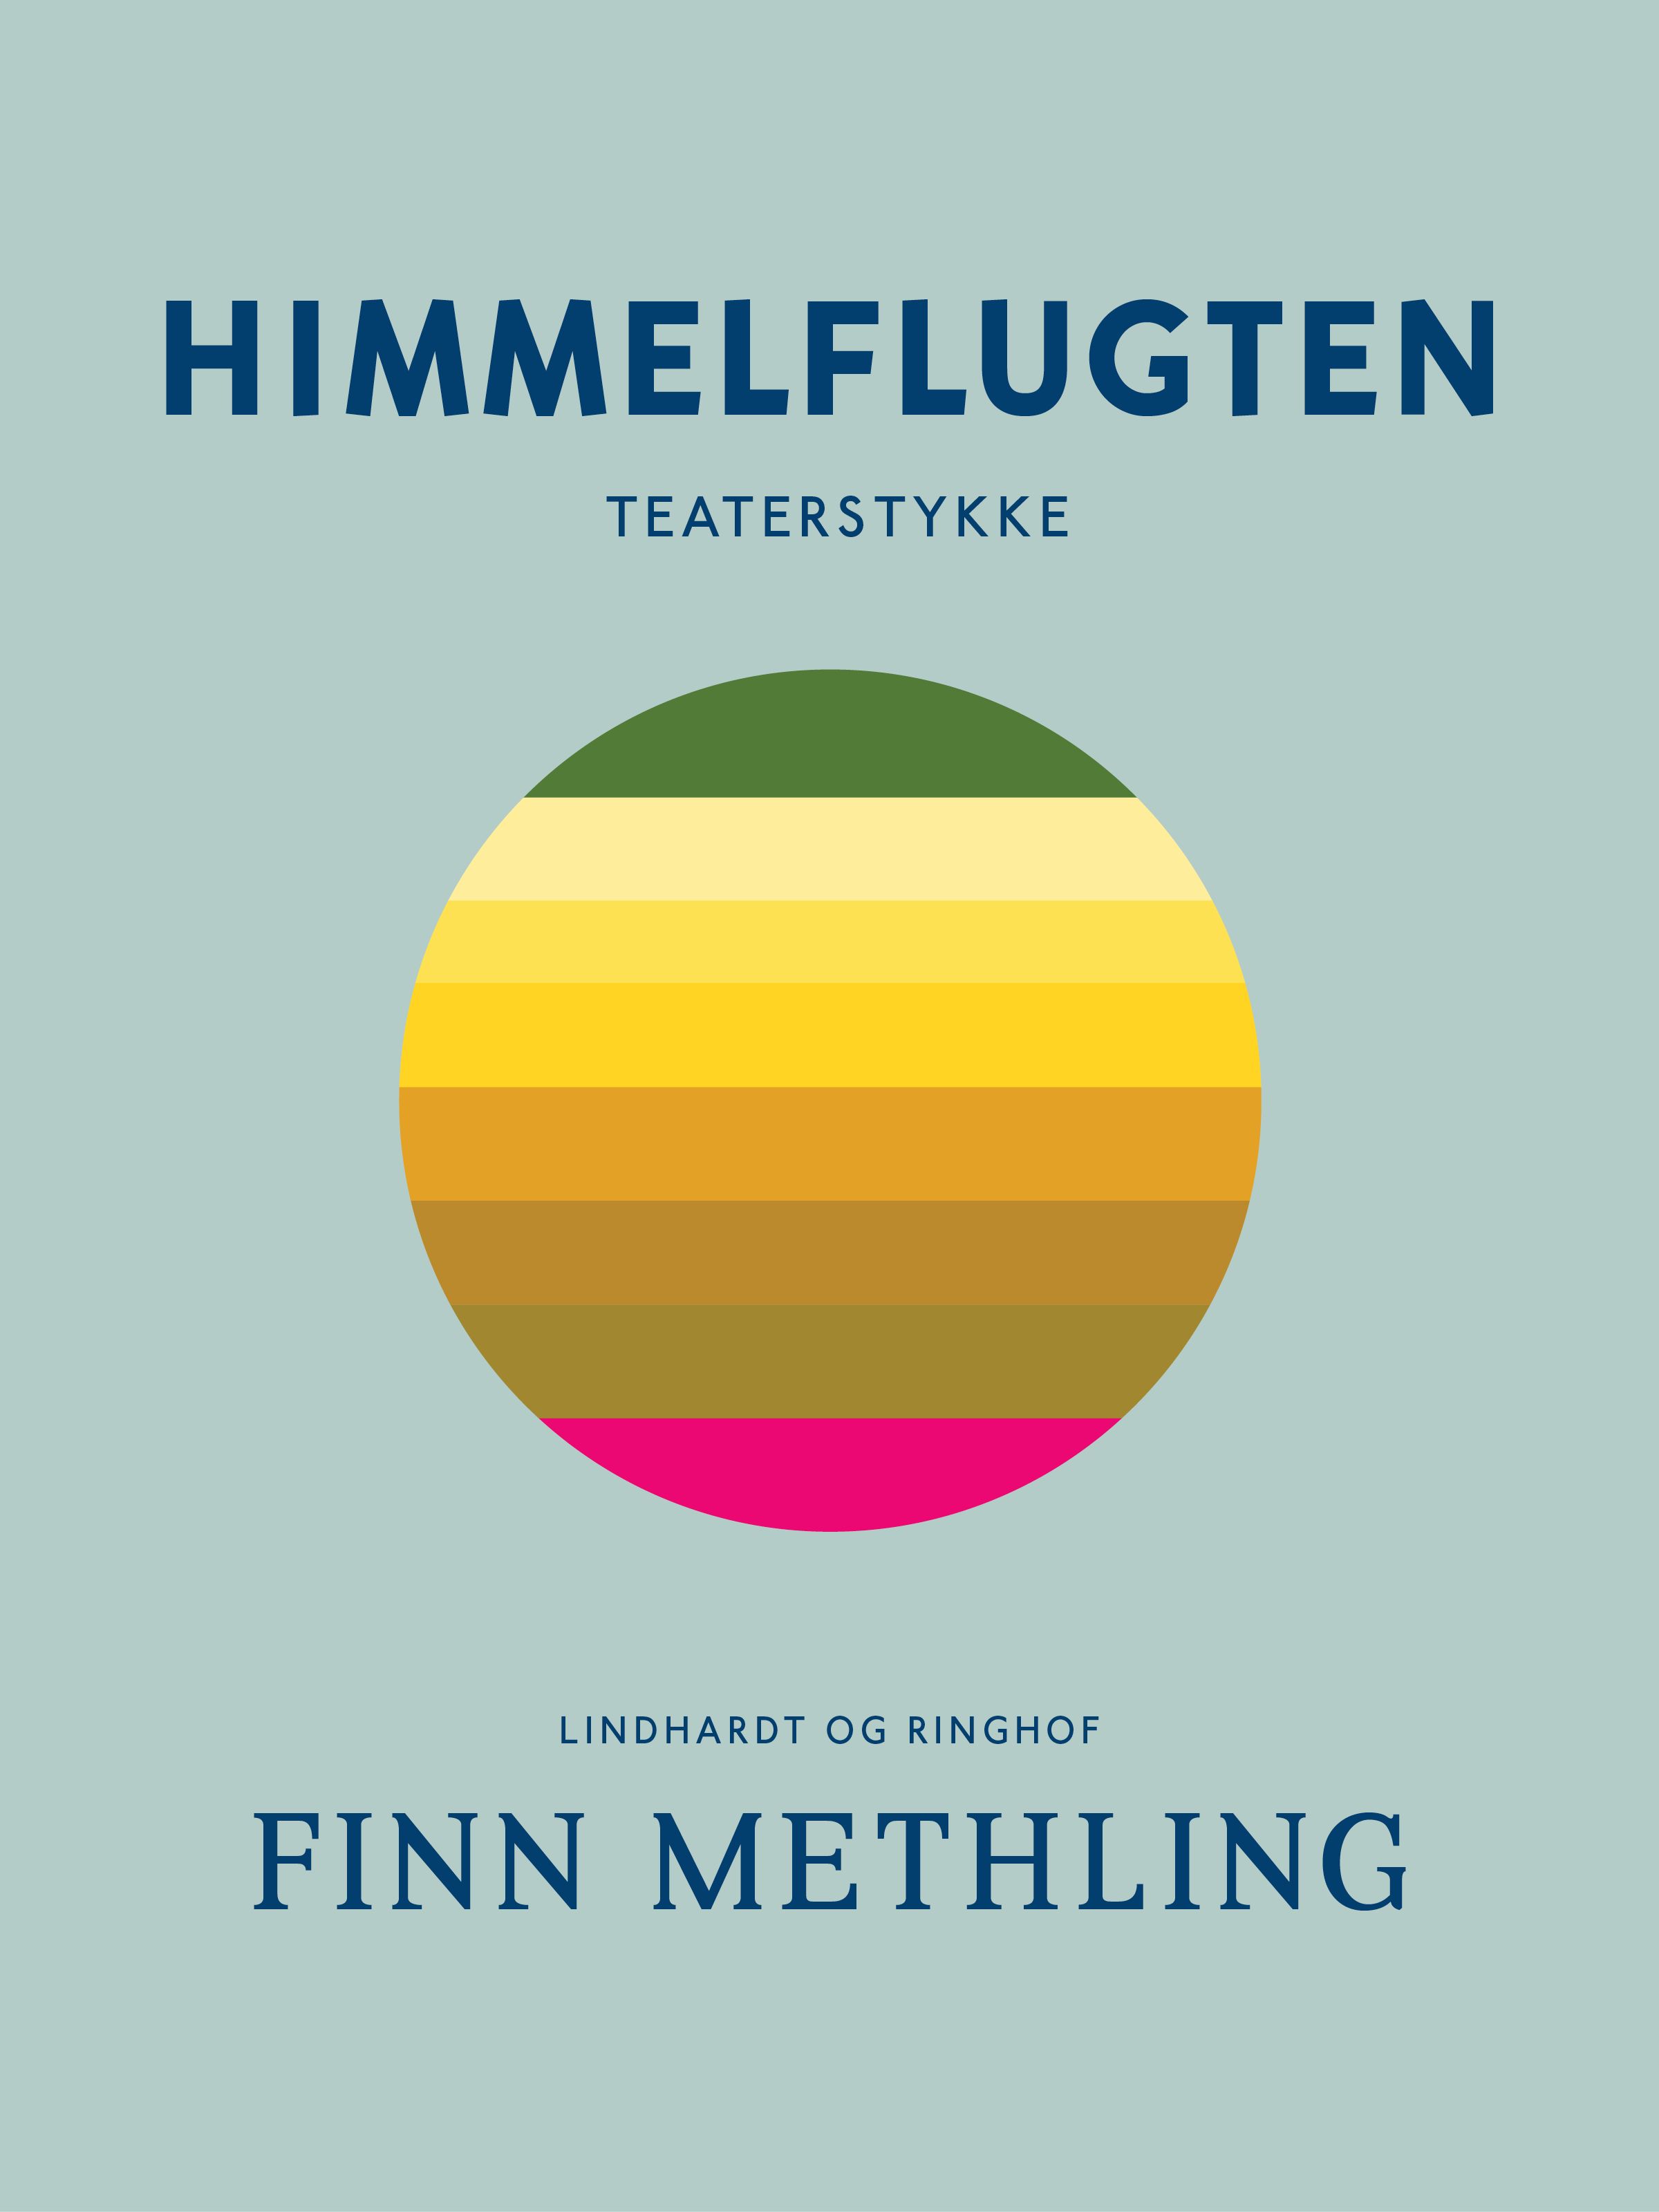 Himmelflugten, e-bok av Finn Methling